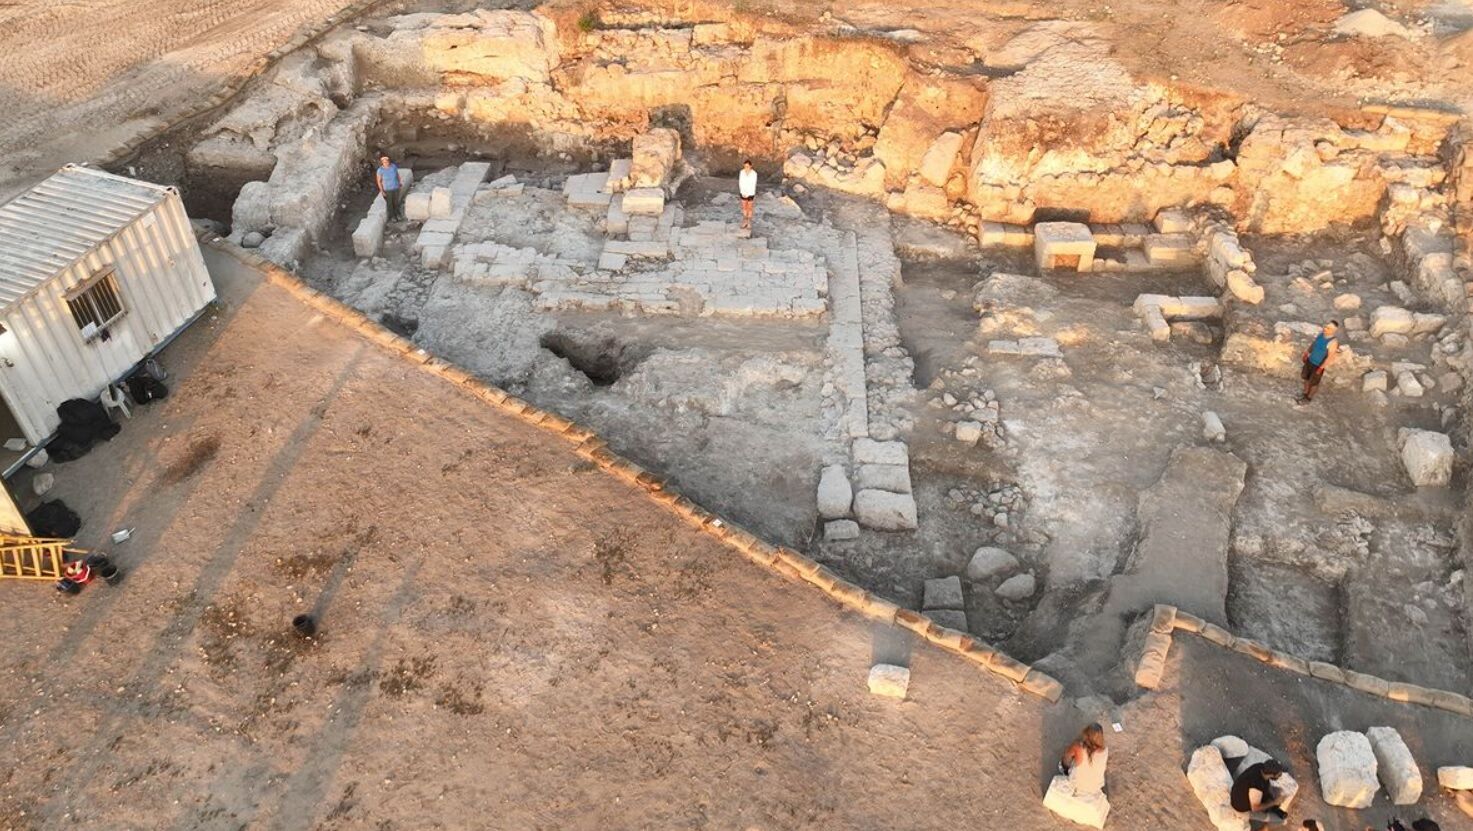 Вблизи Армагеддона в Израиле раскопали кроваво-красные стены 1800-летнего римского амфитеатра (фото)